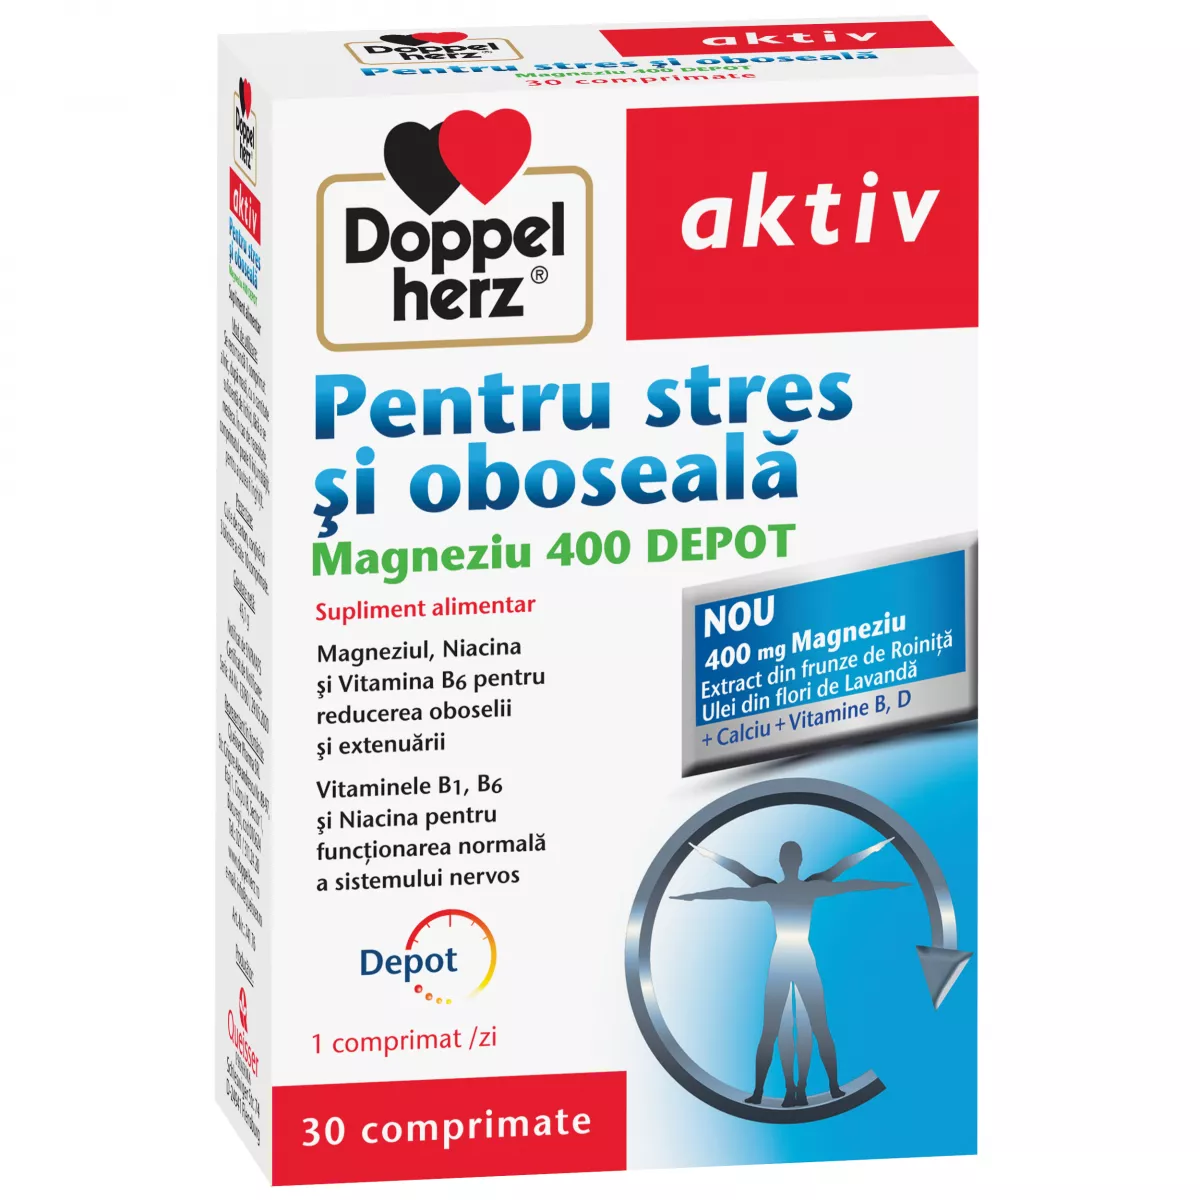 Doppelherz Aktiv Pentru Stres și Oboseală Magneziu 400 DEPOT, 30 comprimate